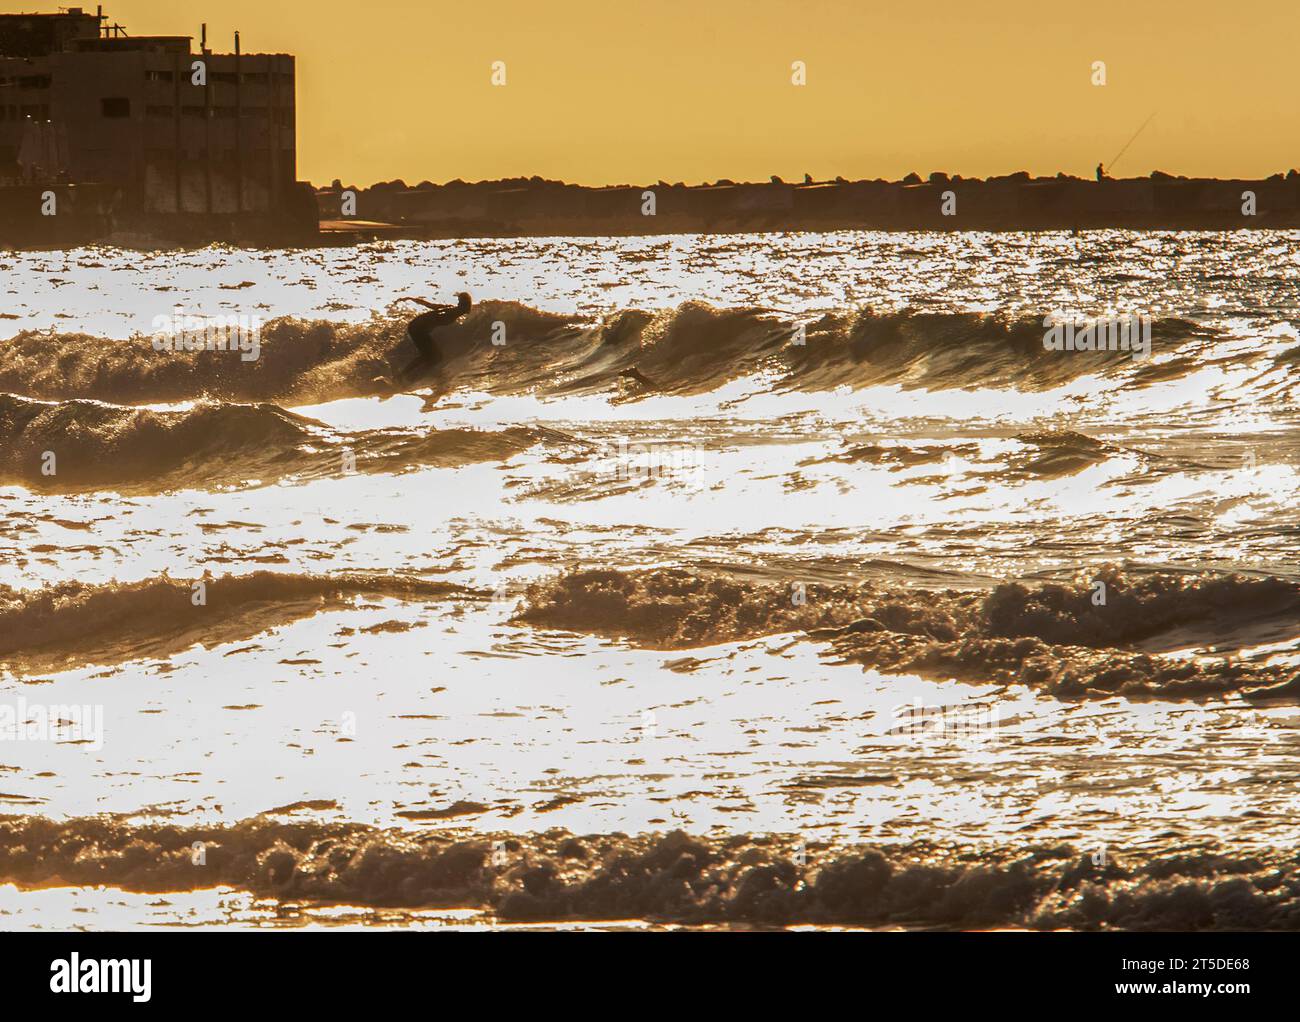 Silhouette de surfeur allant à cheval dans l'eau du golfe de Gascogne dans le sable mouillé brillant. Une personne marche avec une planche (surf) sur du sable mouillé dans l'eau Banque D'Images